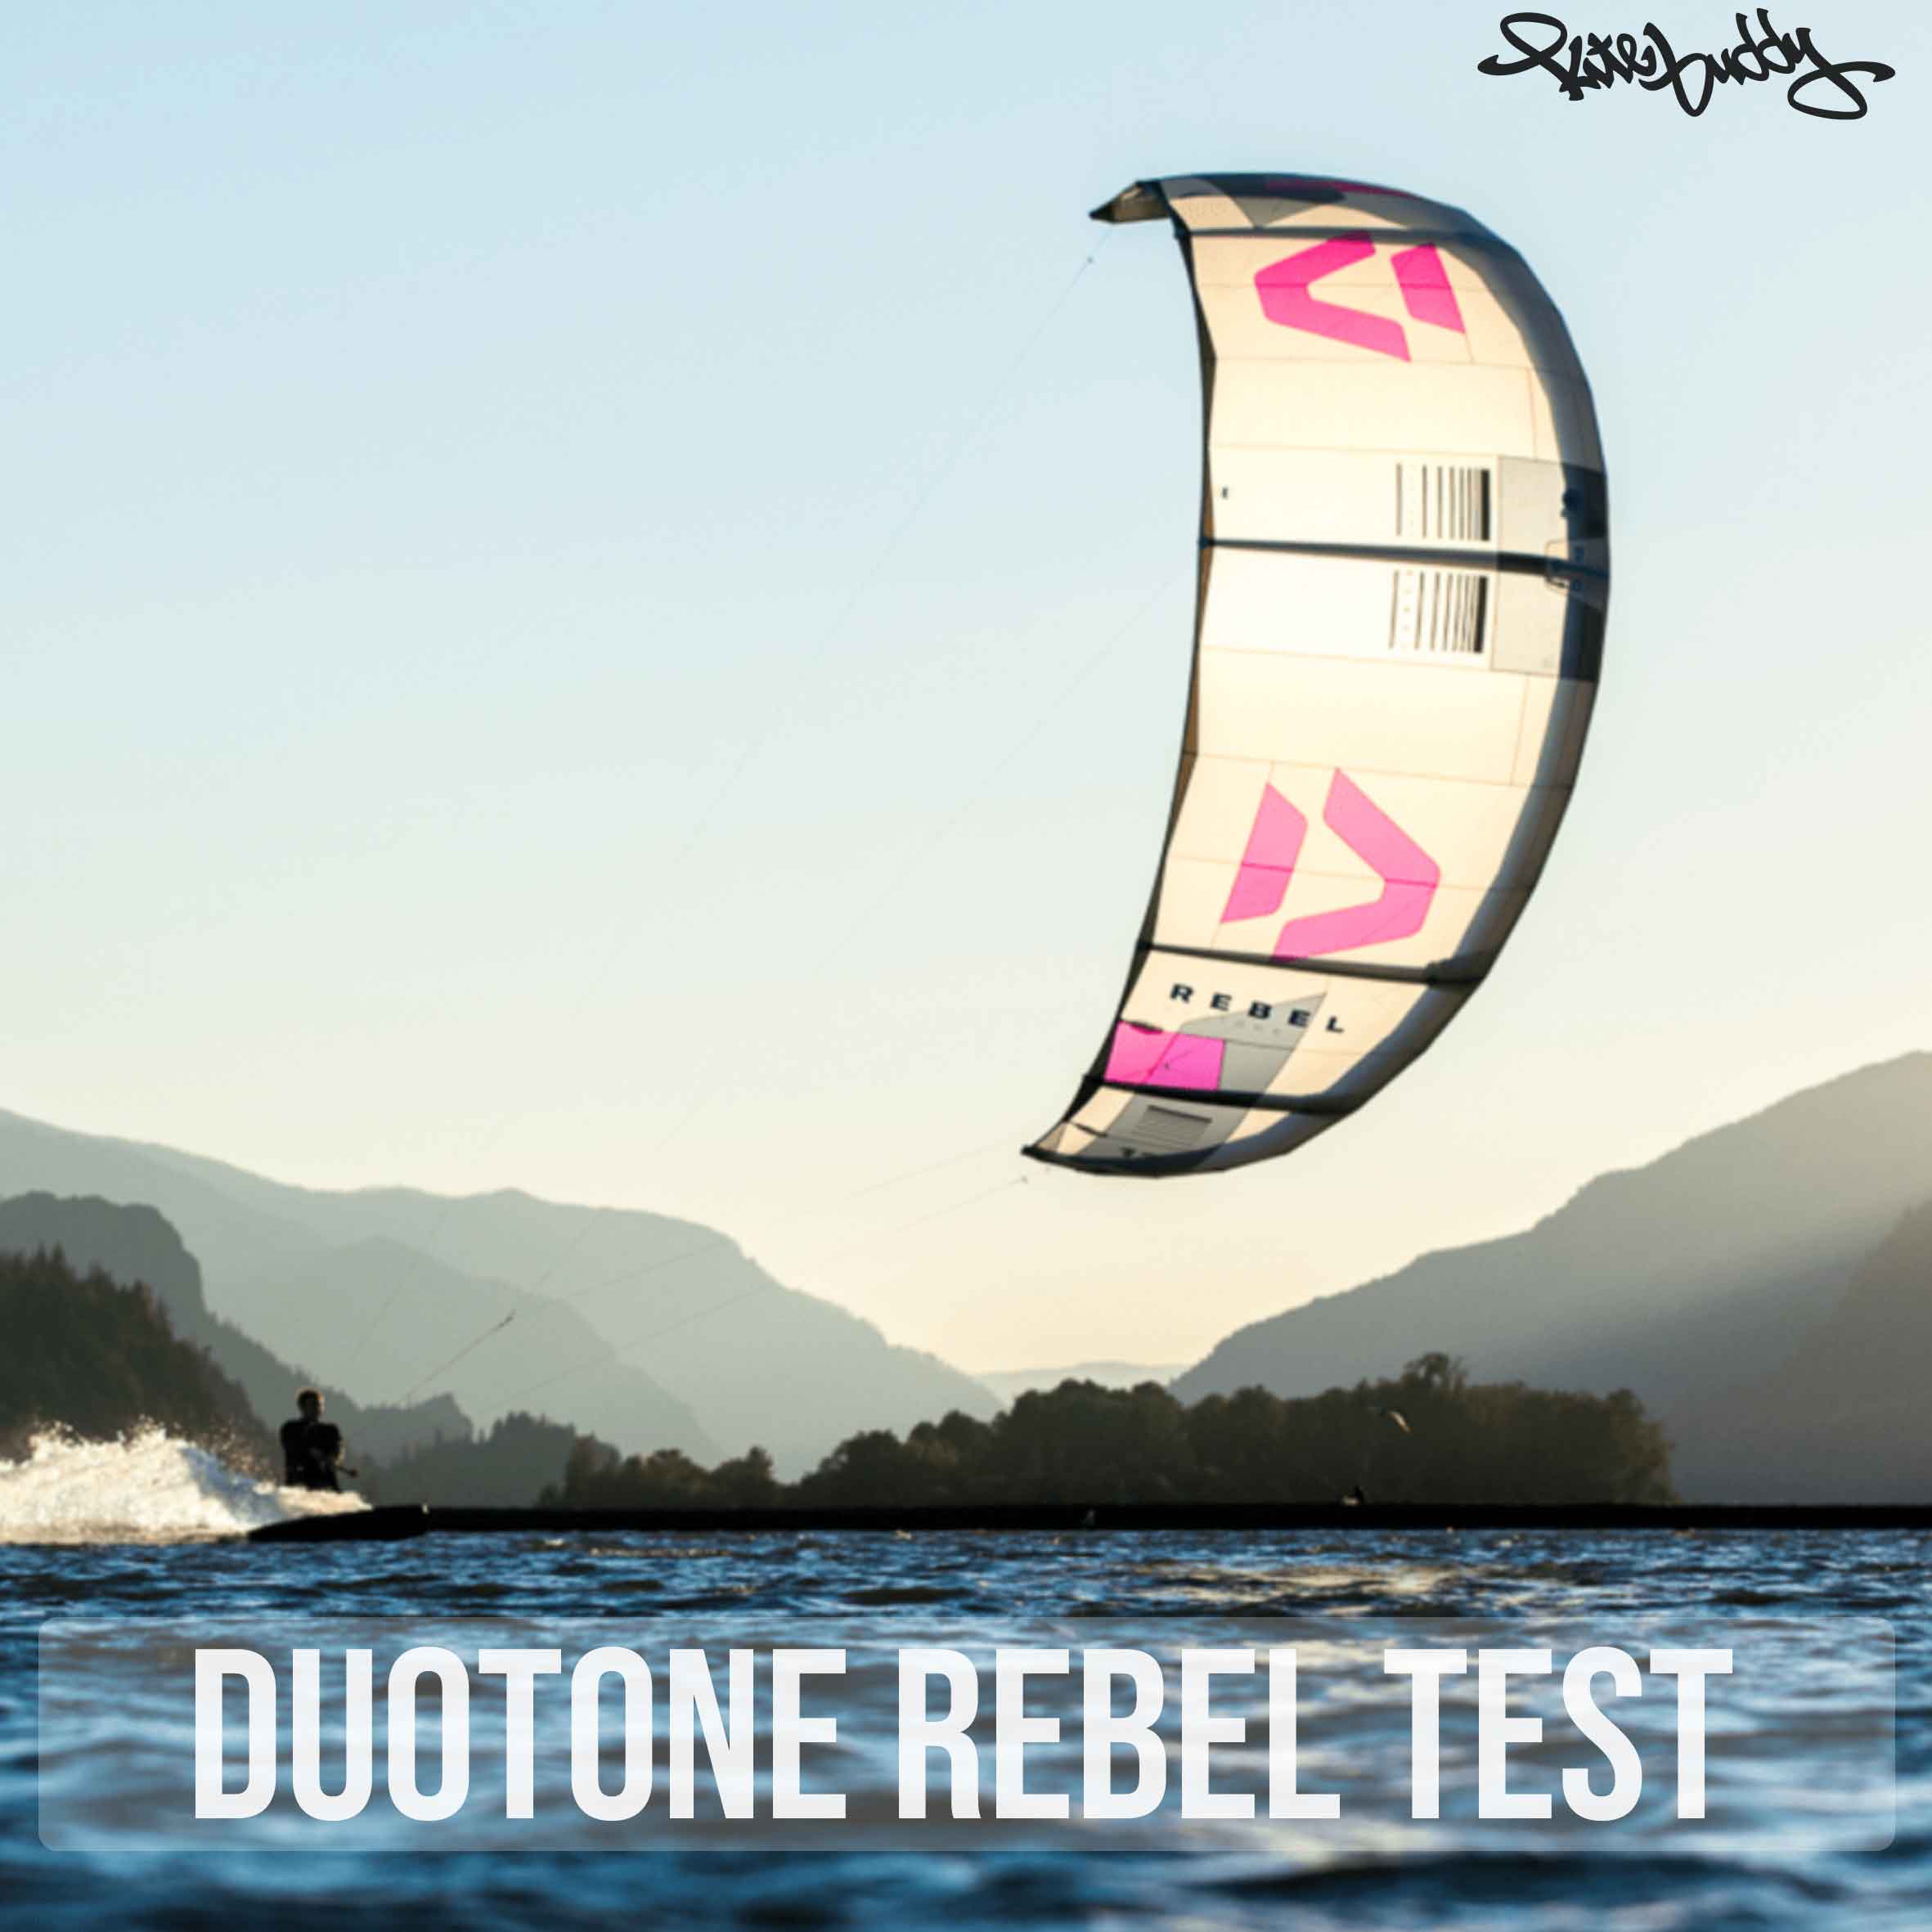 Wir sehen auf dem Bild einen Tupekite von Duotone in Weiß mit Pinkem Duotone Logo. Der Kitesurfer fährt bei Sonnenschein über das Blau Meer.